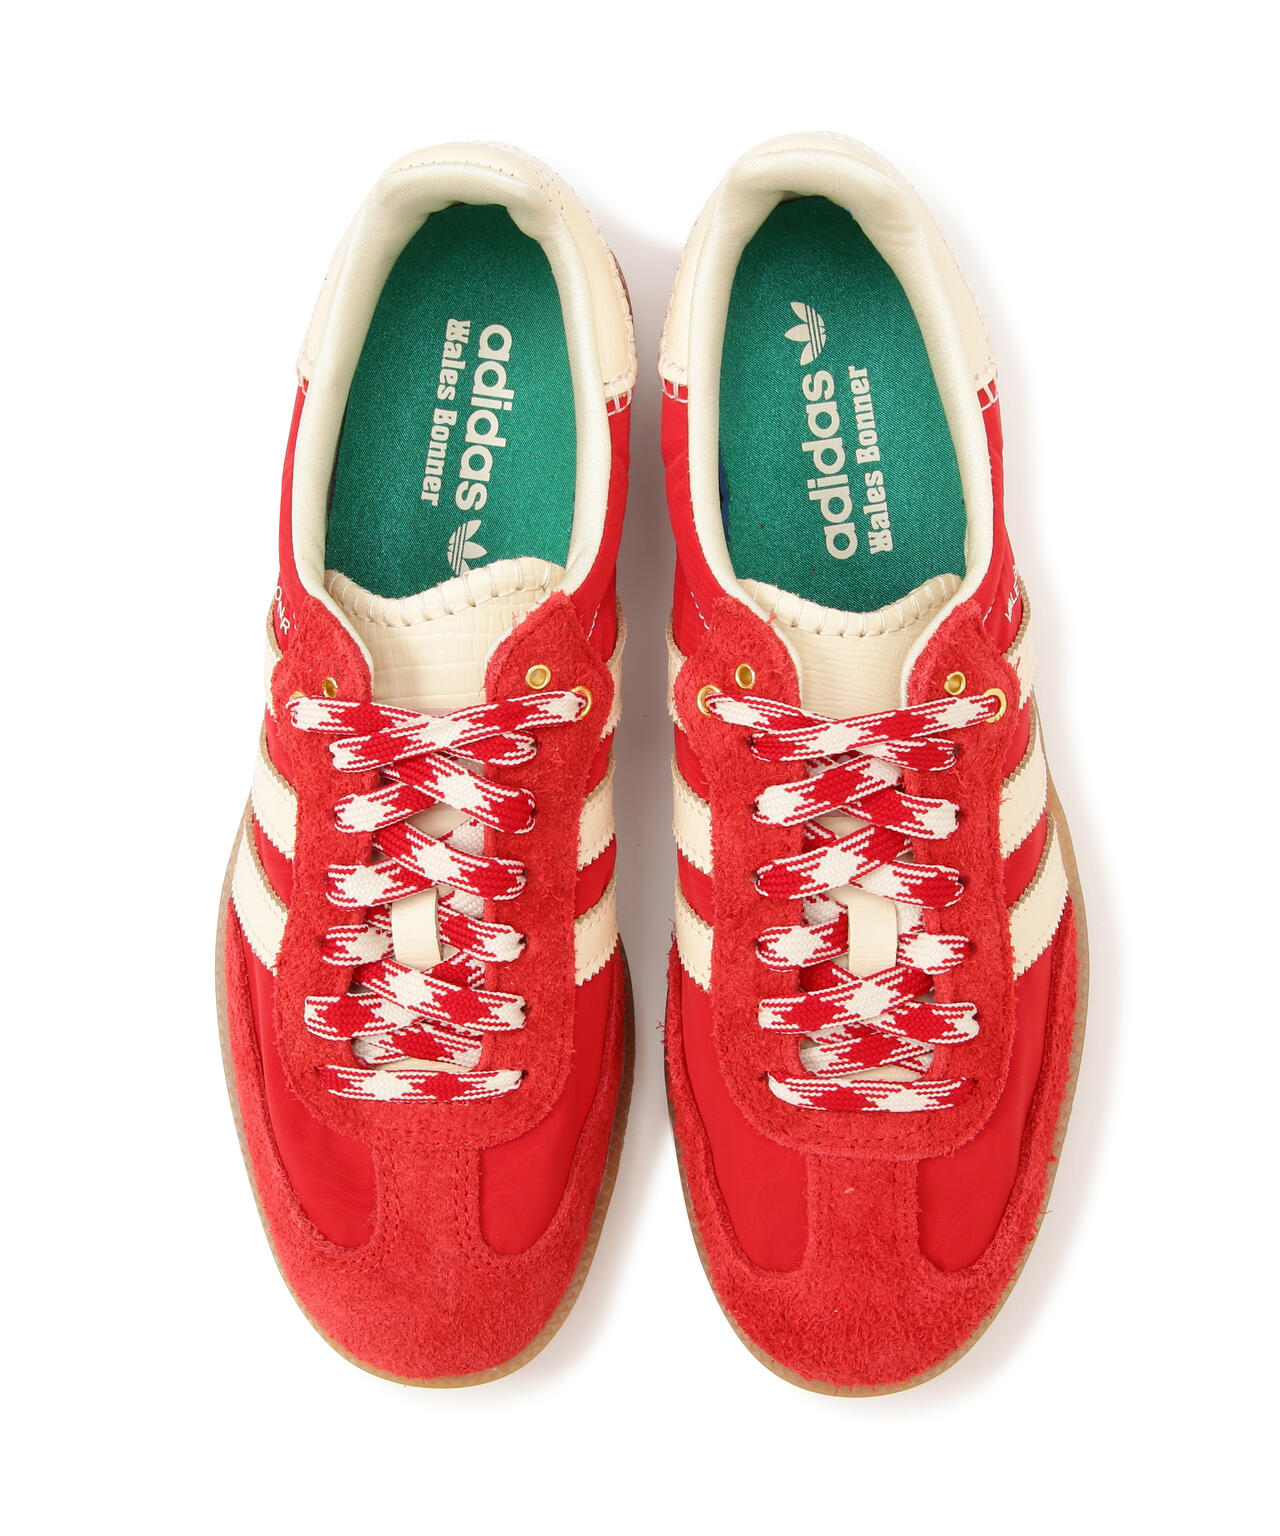 から購入認定海外小売店Adidas×Wales Bonner Samba Red 27cm